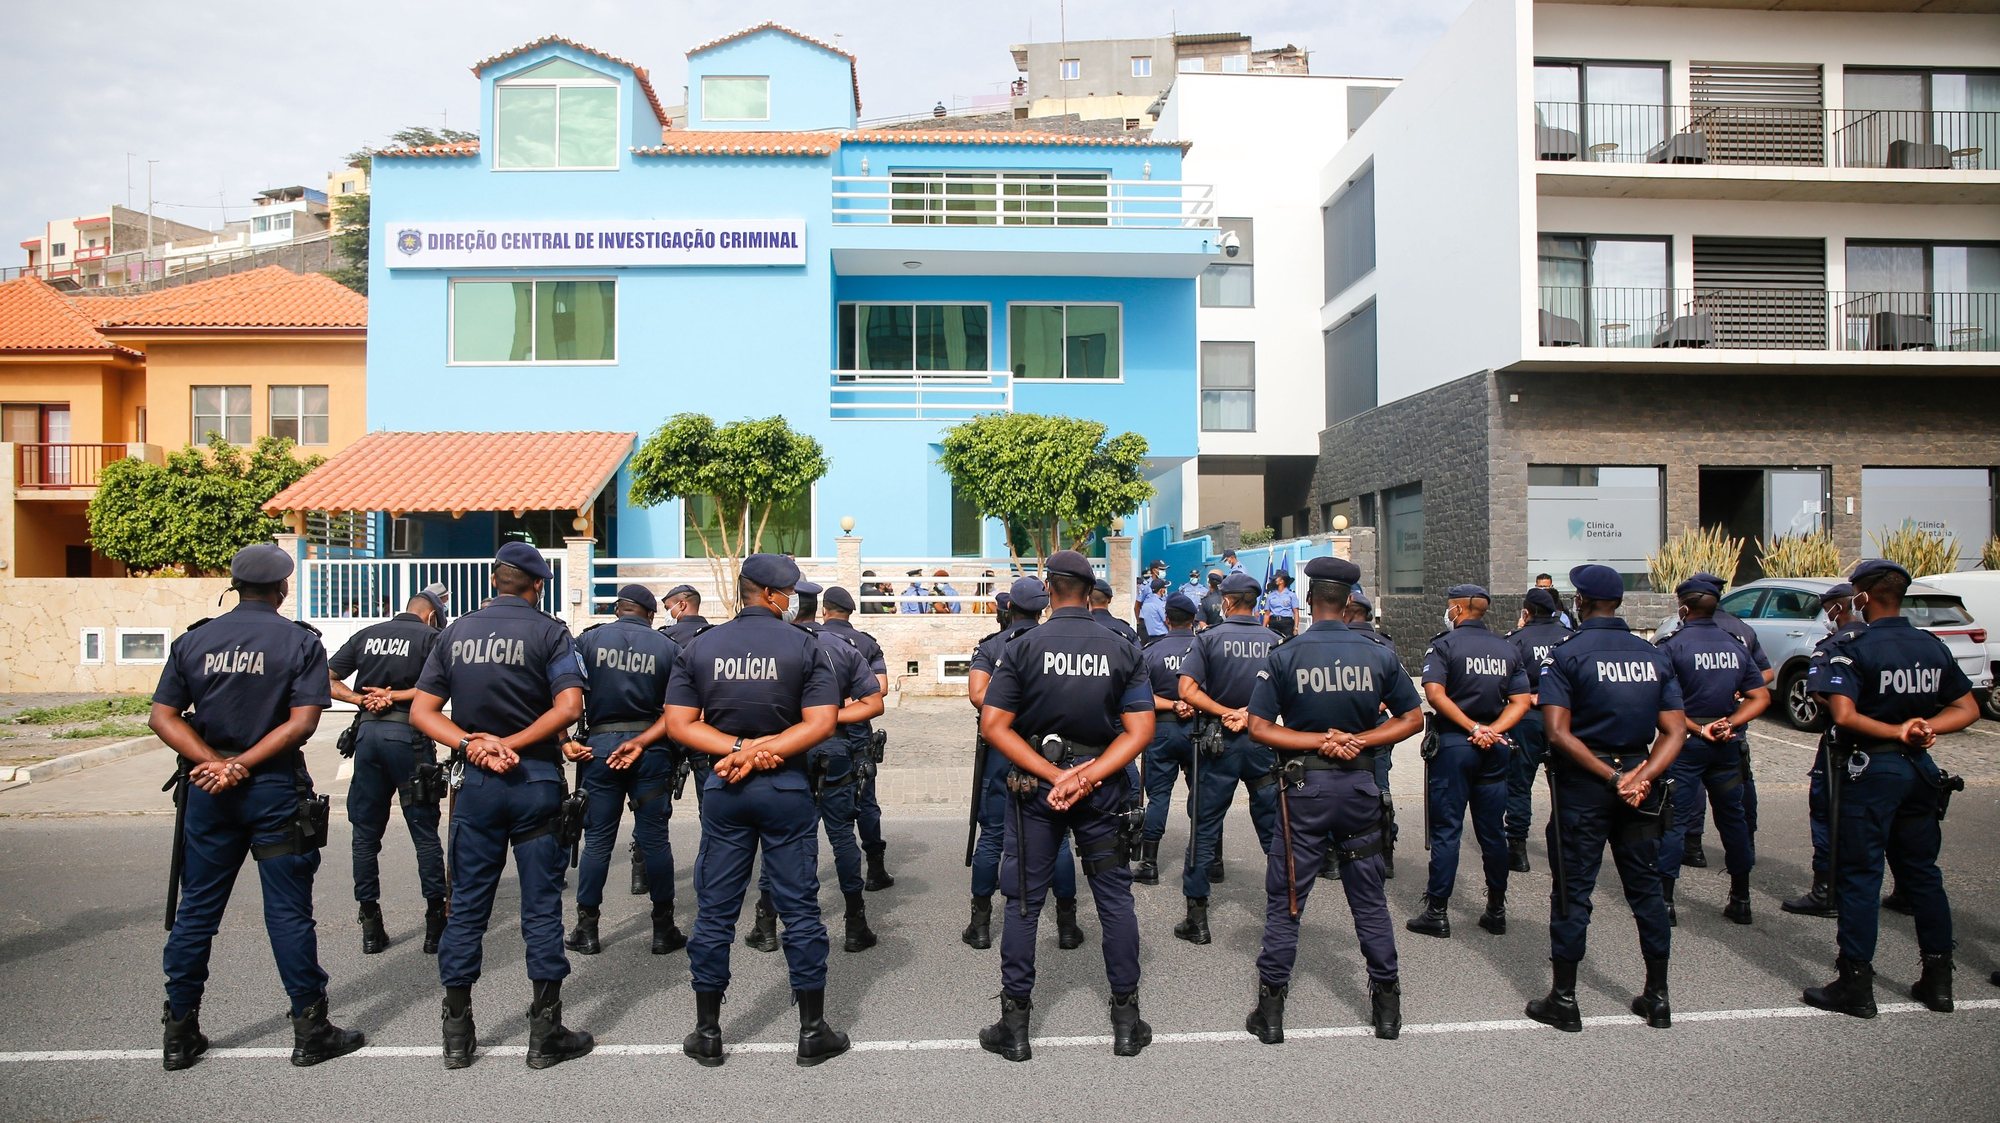 Foi esta manhã inaugurada a sede da Direção Central de Investigação Criminal da Polícia Nacional cabo-verdiana  pelo ministro da Administração Interna de Cabo Verde, Paulo Rocha (ausente da fotografia), na cidade da Praia, Cabo Verde, 09 de fevereiro de 2021. FERNANDO DE PINA/LUSA